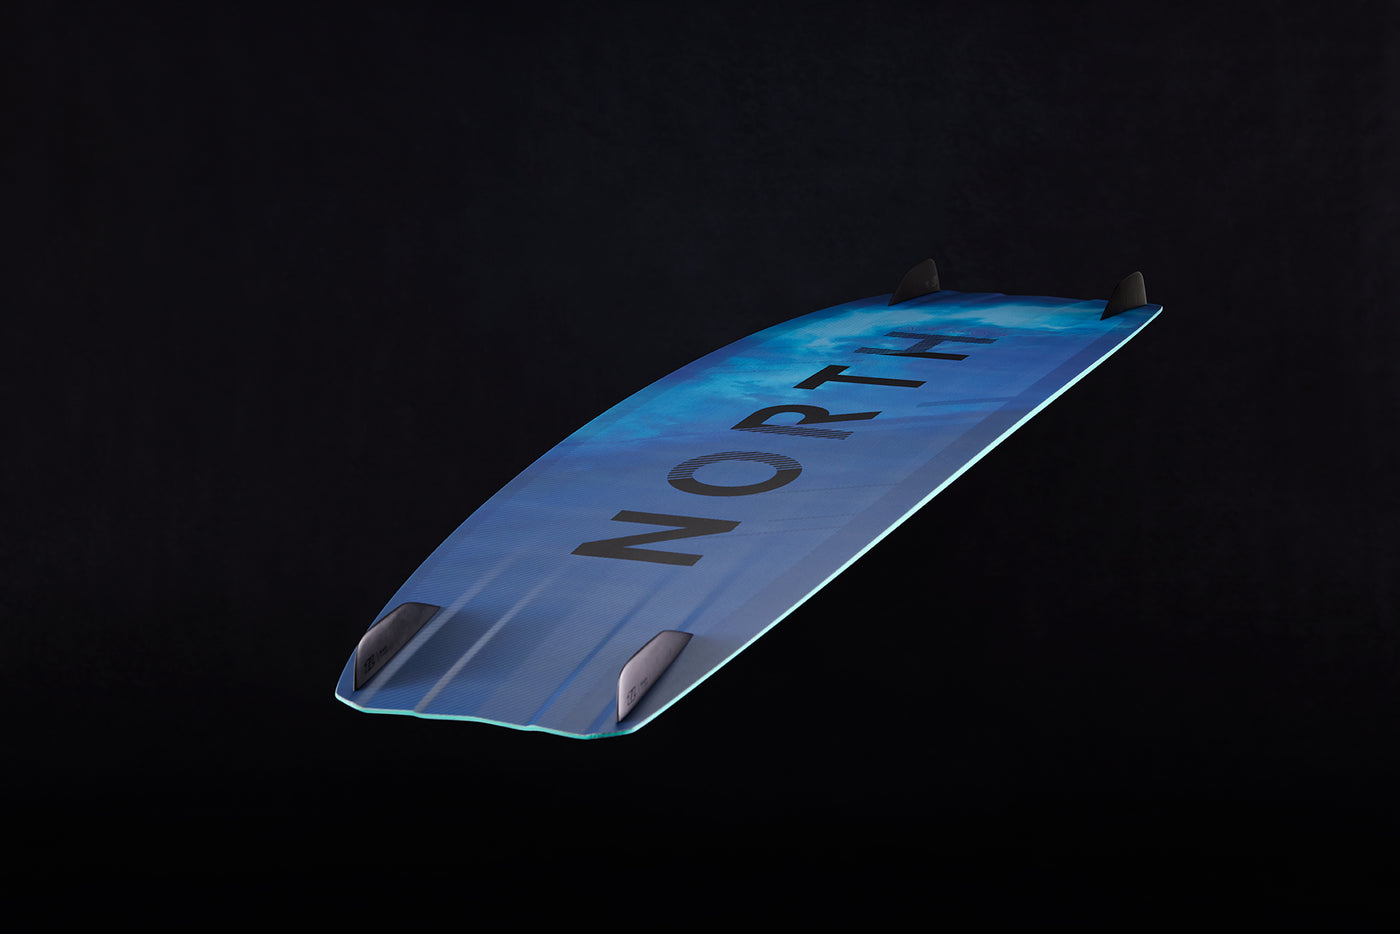 North Atmos Hybrid 2023 (Ocean Blue) 136 x 40cm-15% off